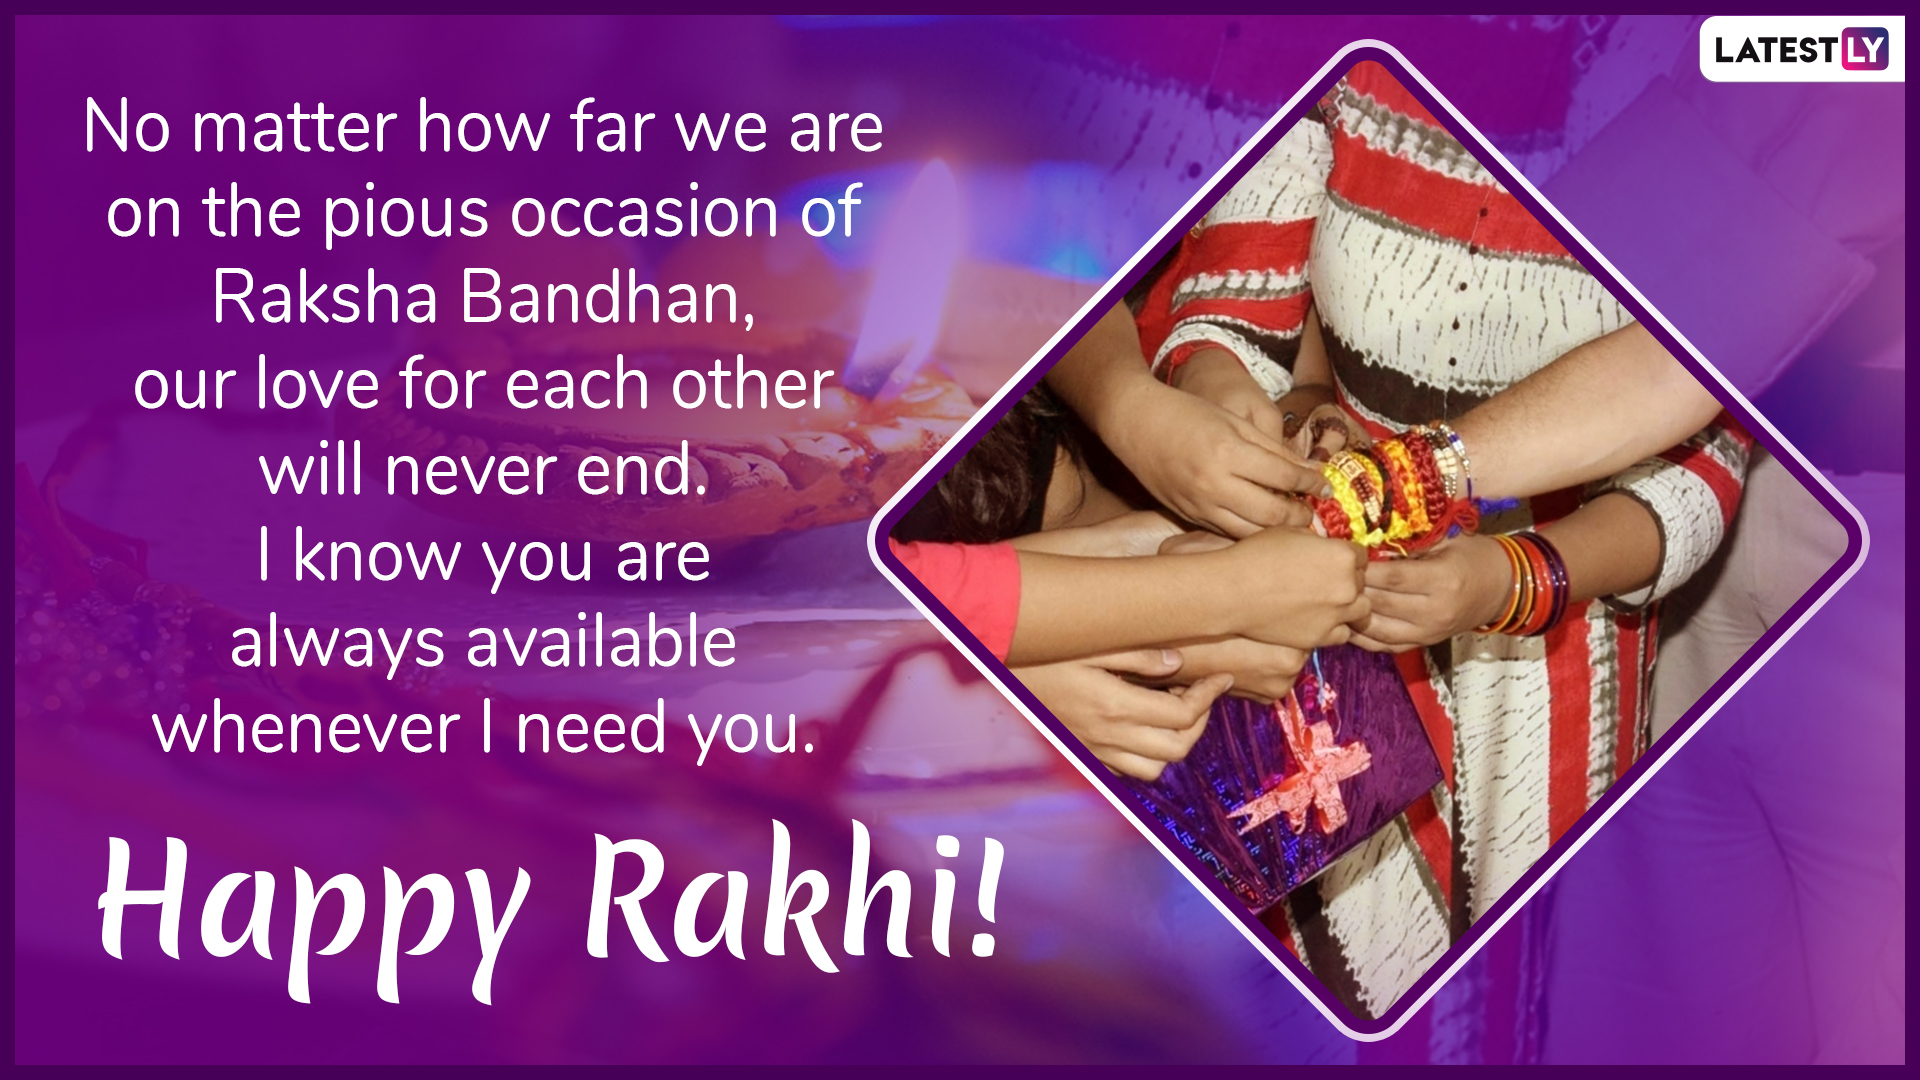 Raksha Bandhan 2019 Greeting Card For Download 1 - Happy Raksha Bandhan 2019 Images Download - HD Wallpaper 